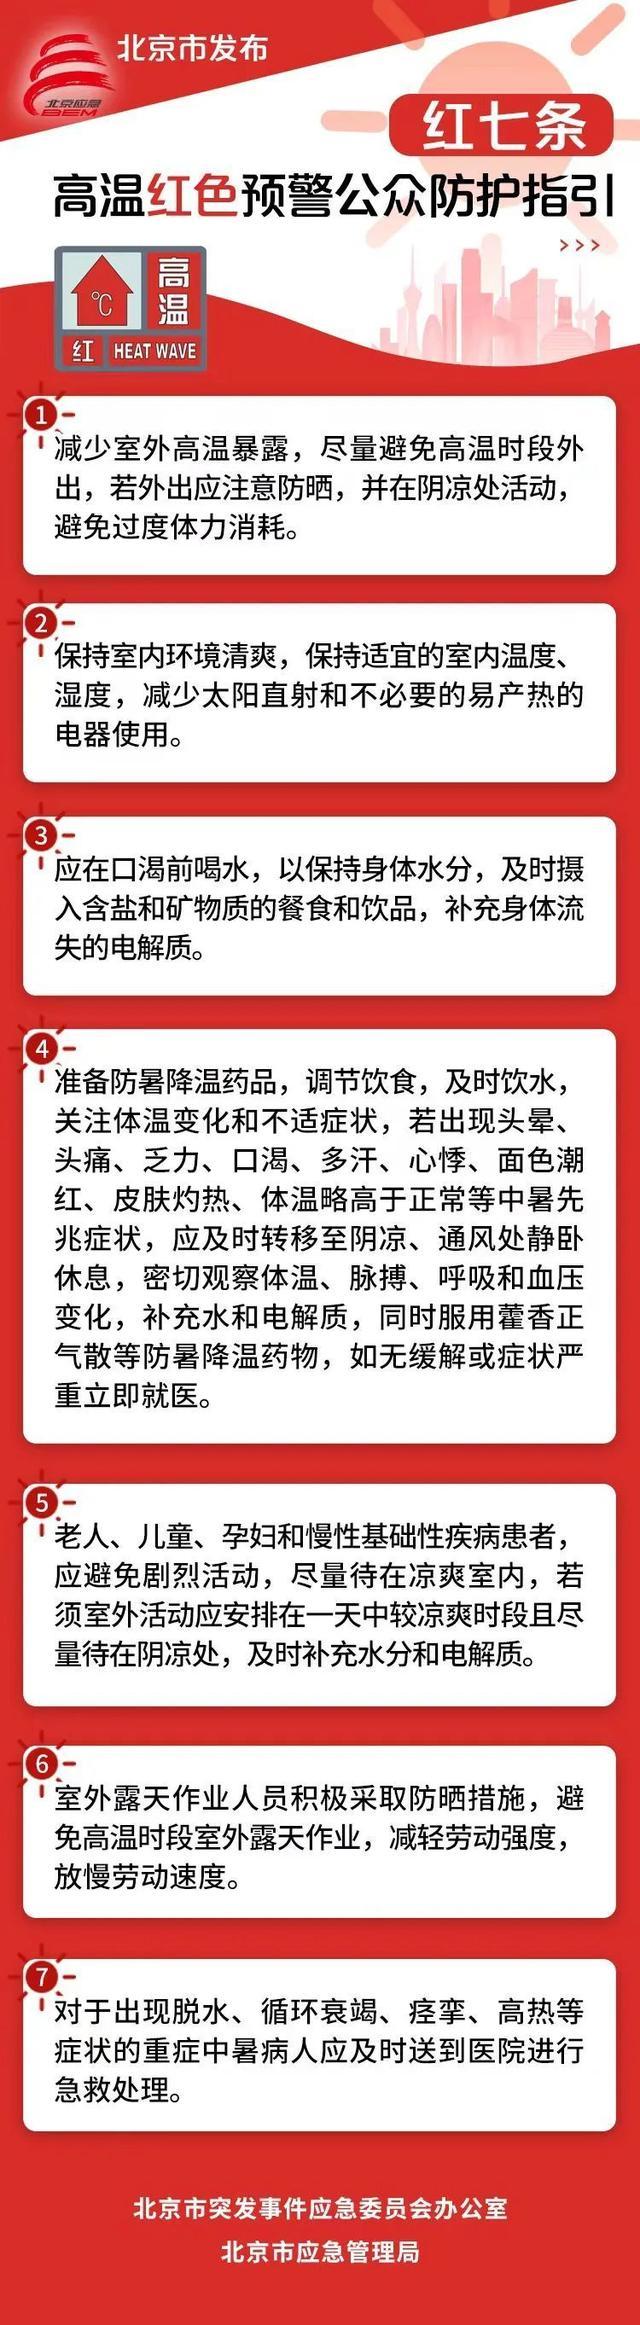 北京高温预警市民如何防护